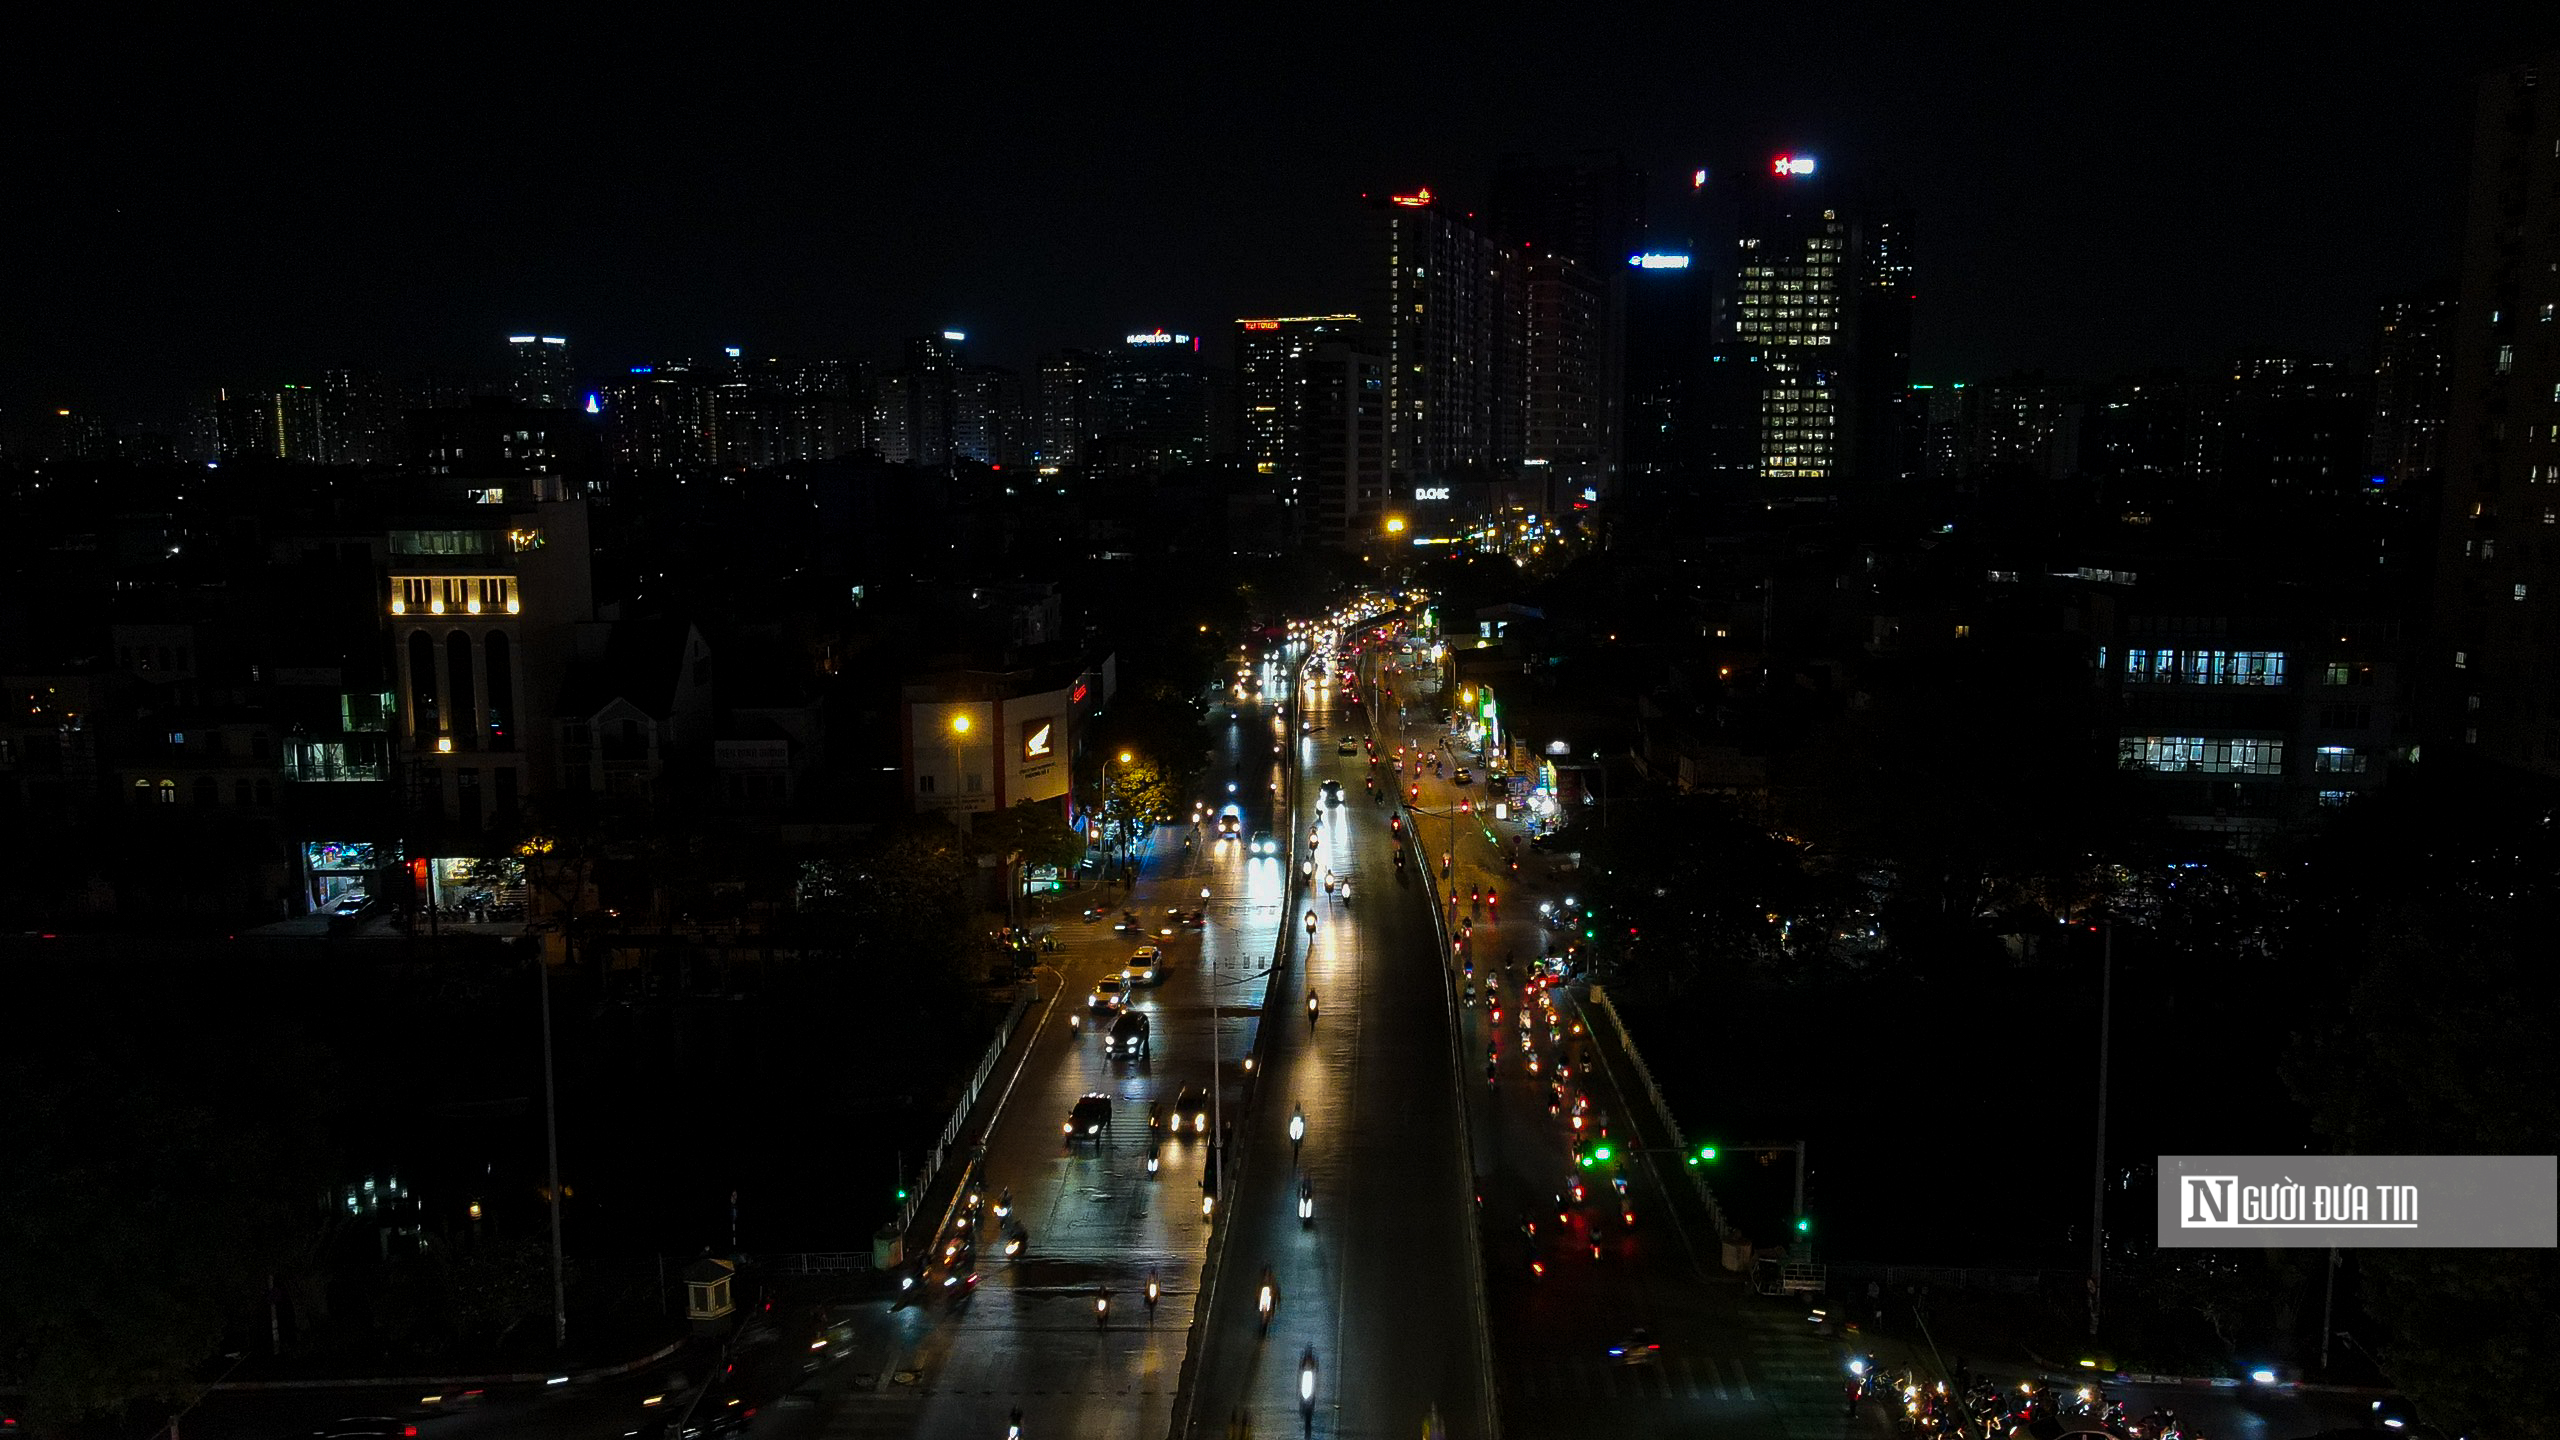 Dân sinh - Hà Nội: Nhiều tuyến đường, tòa nhà tối sầm vì cắt giảm tiêu thụ điện (Hình 13).